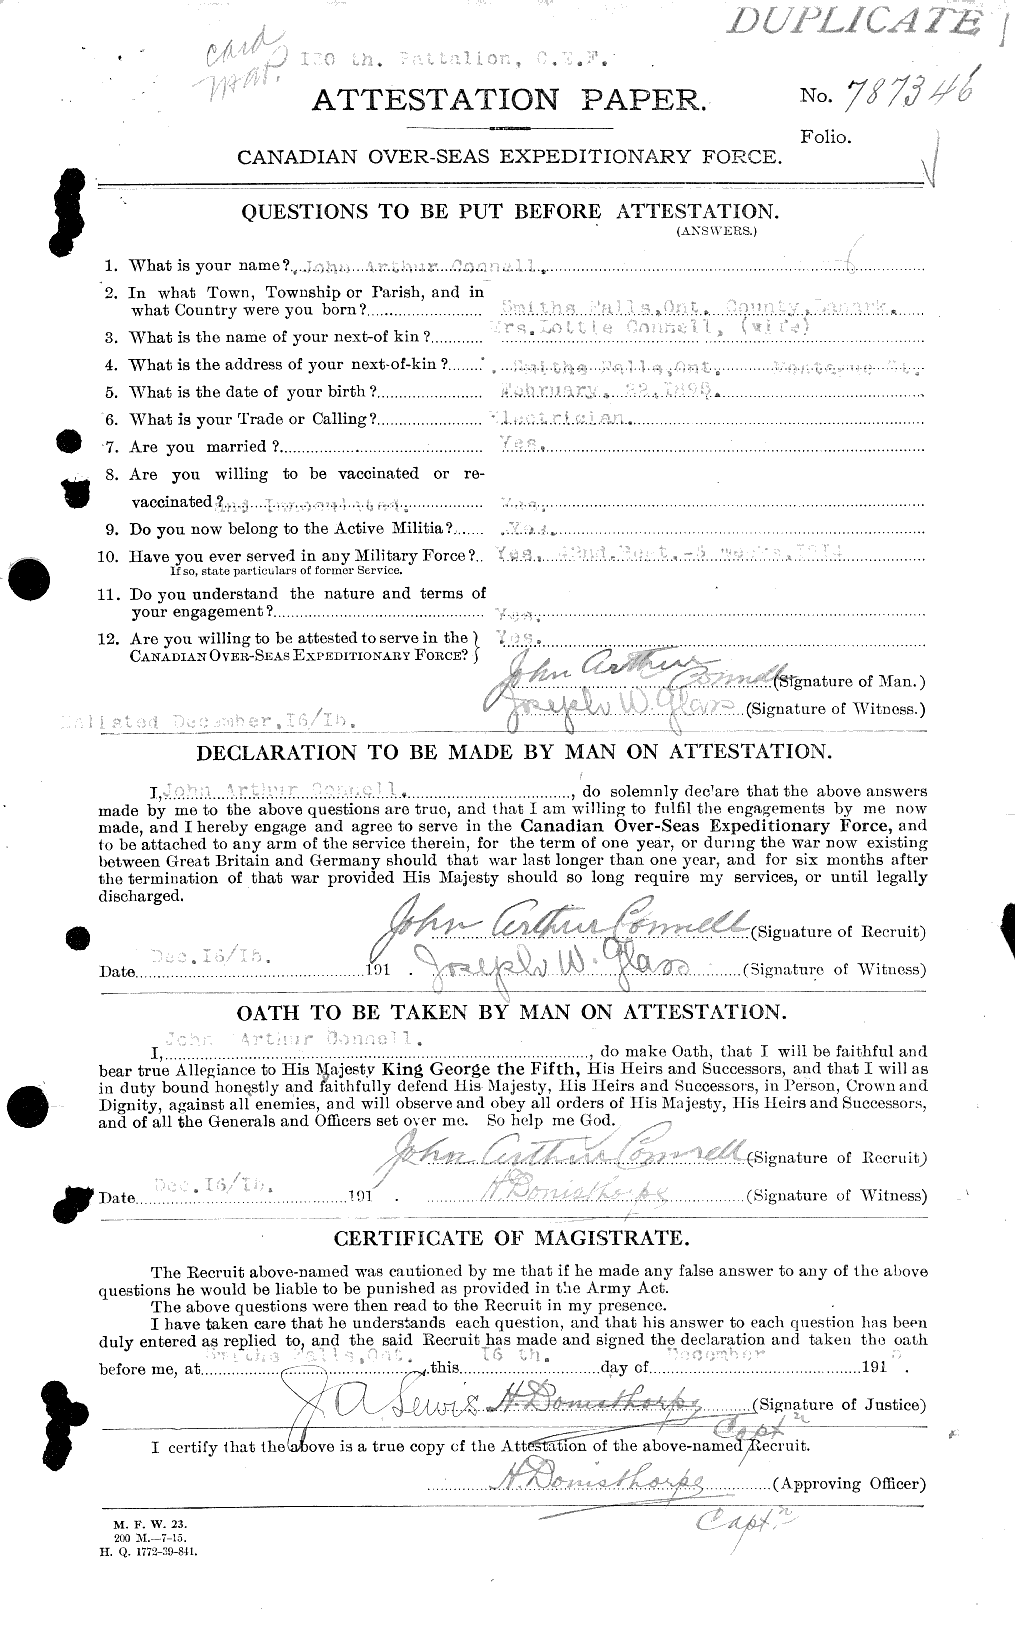 Dossiers du Personnel de la Première Guerre mondiale - CEC 038182a